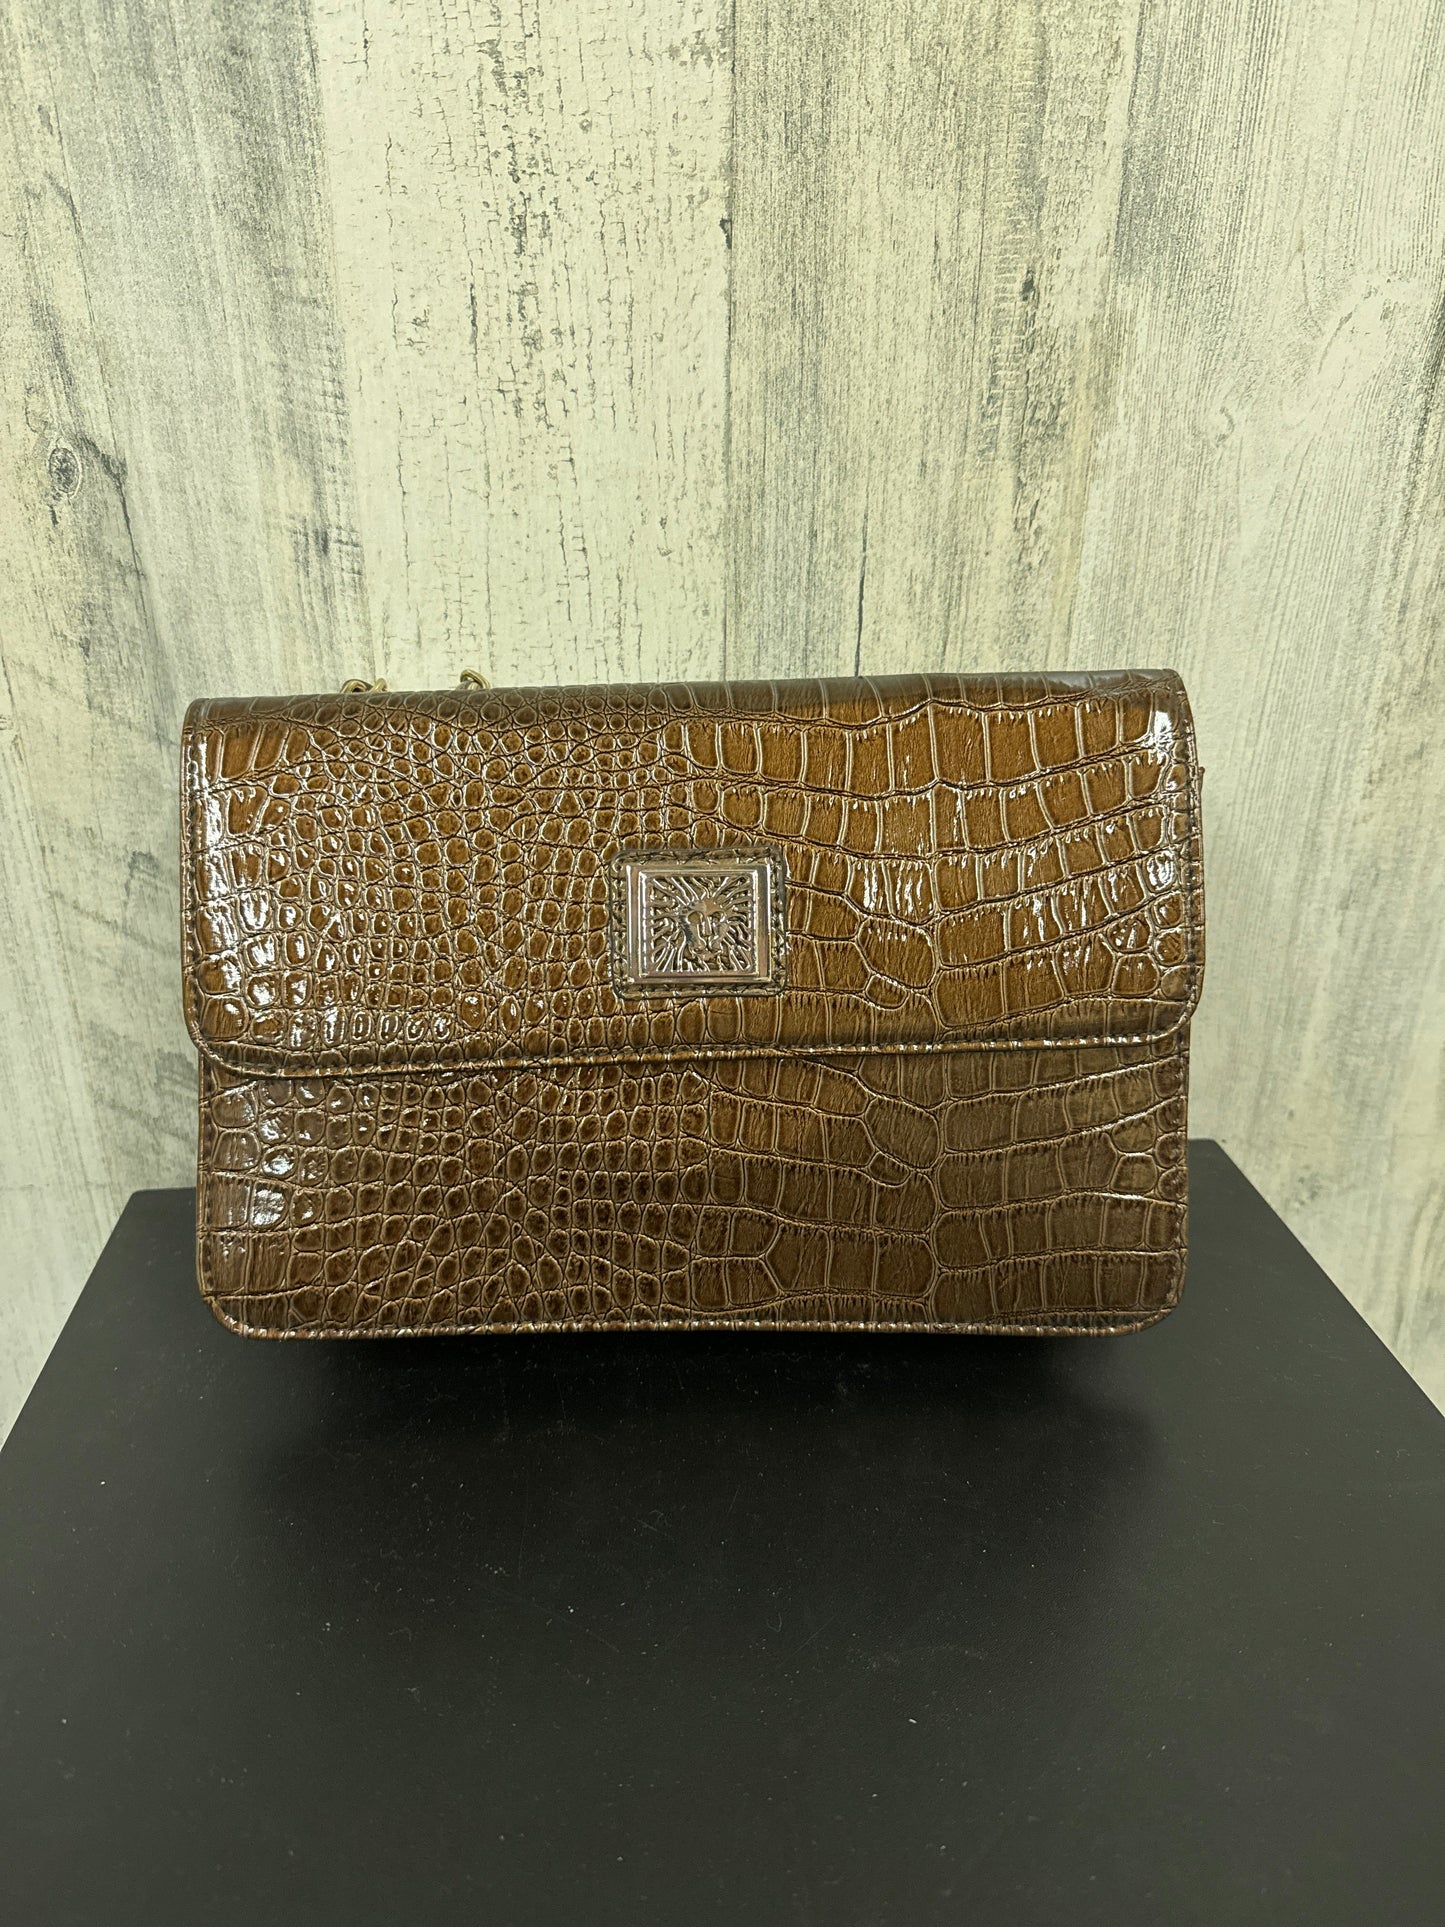 Brown Handbag Anne Klein, Size Medium